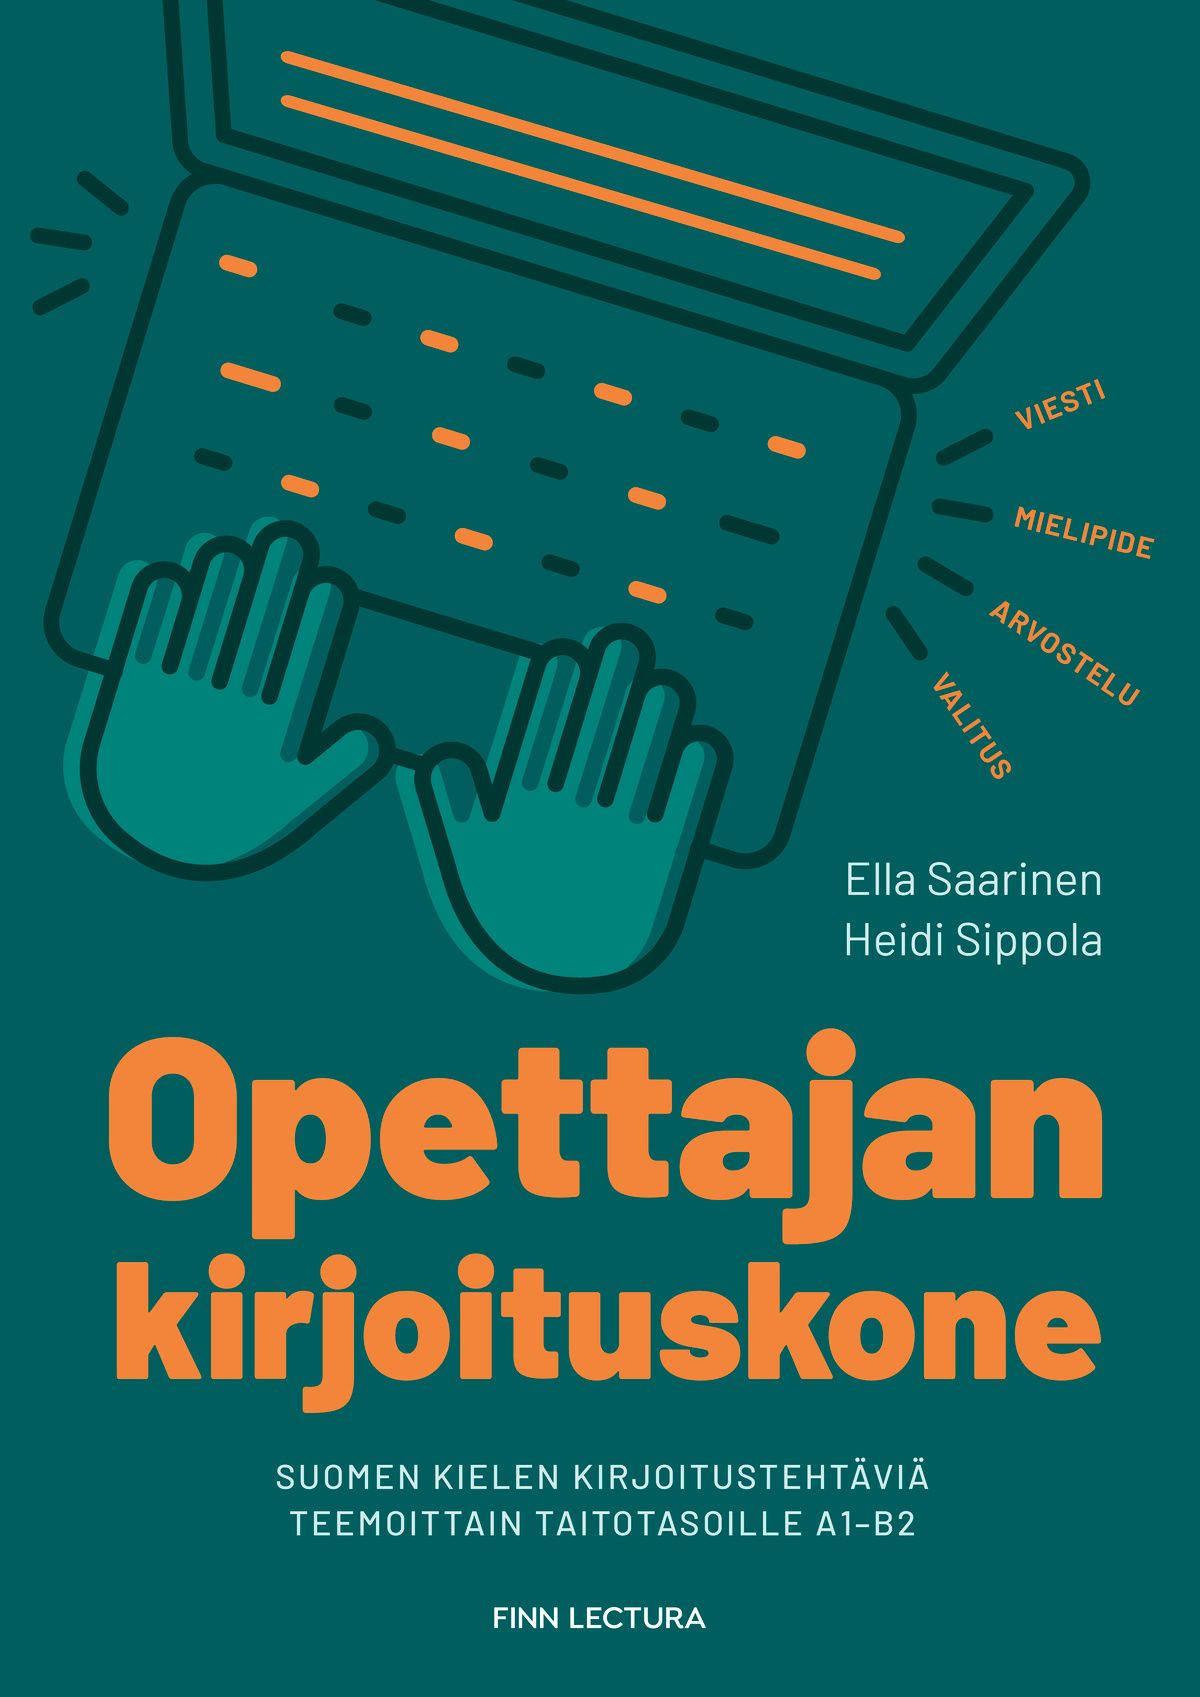 Ella Saarinen & Heidi Sippola : Opettajan kirjoituskone